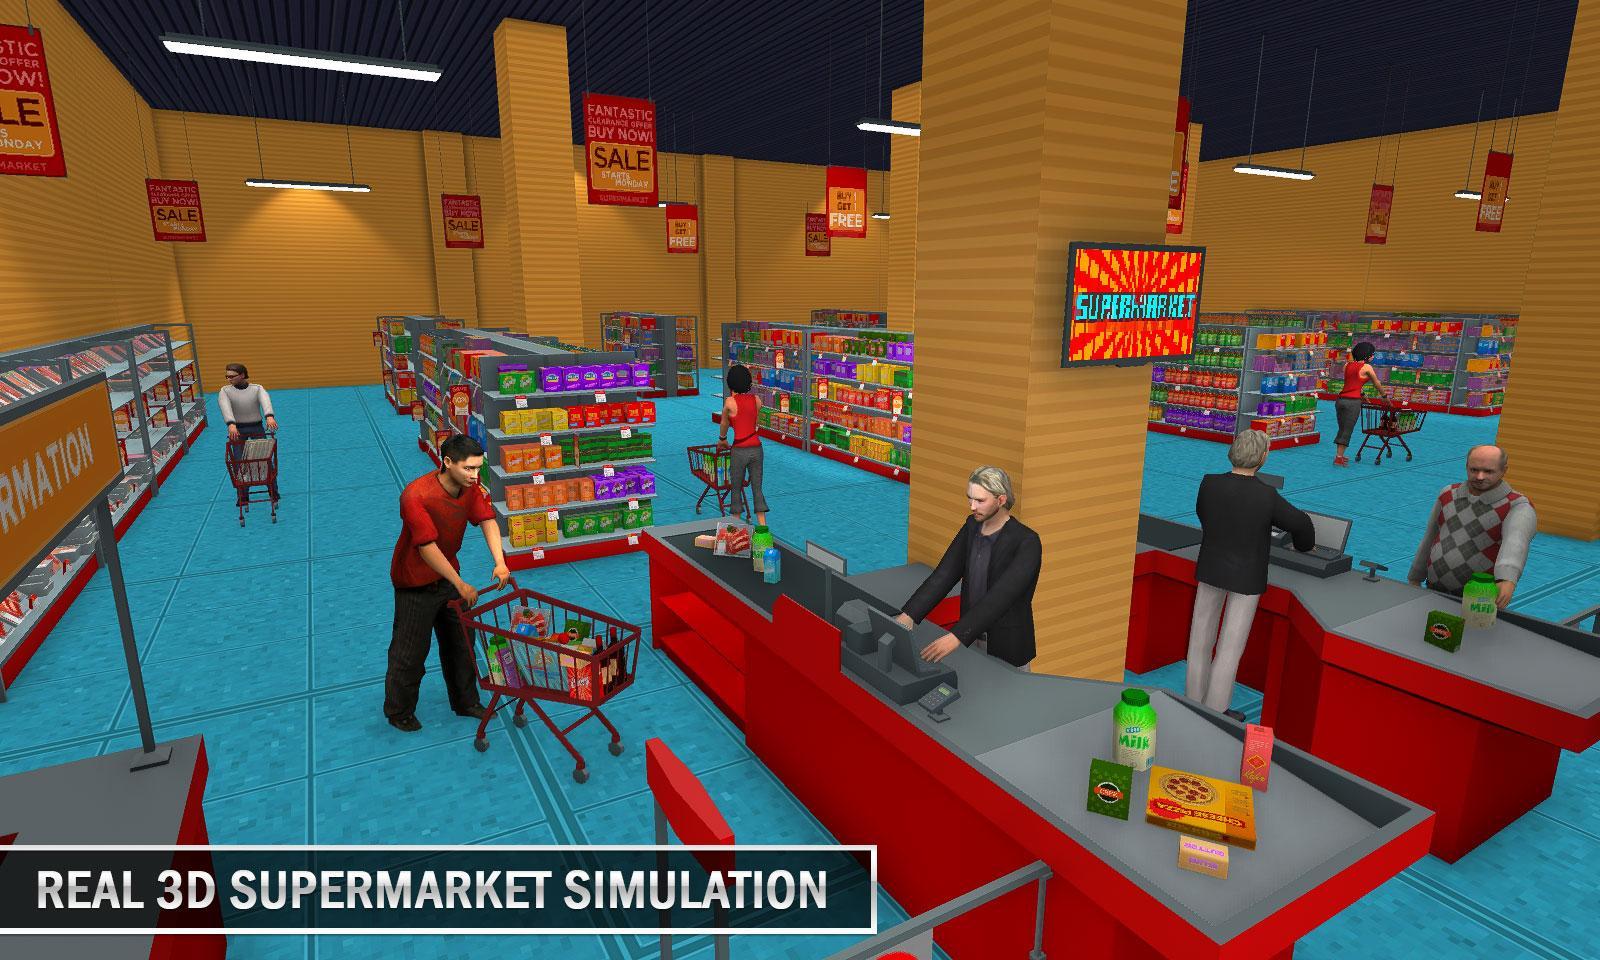 Supermarket simulator 0.1 2.3. Игра продуктовый магазин. Мой супермаркет игра. Игры на тему магазины и здания. Супермаркет симулятор с улицы.